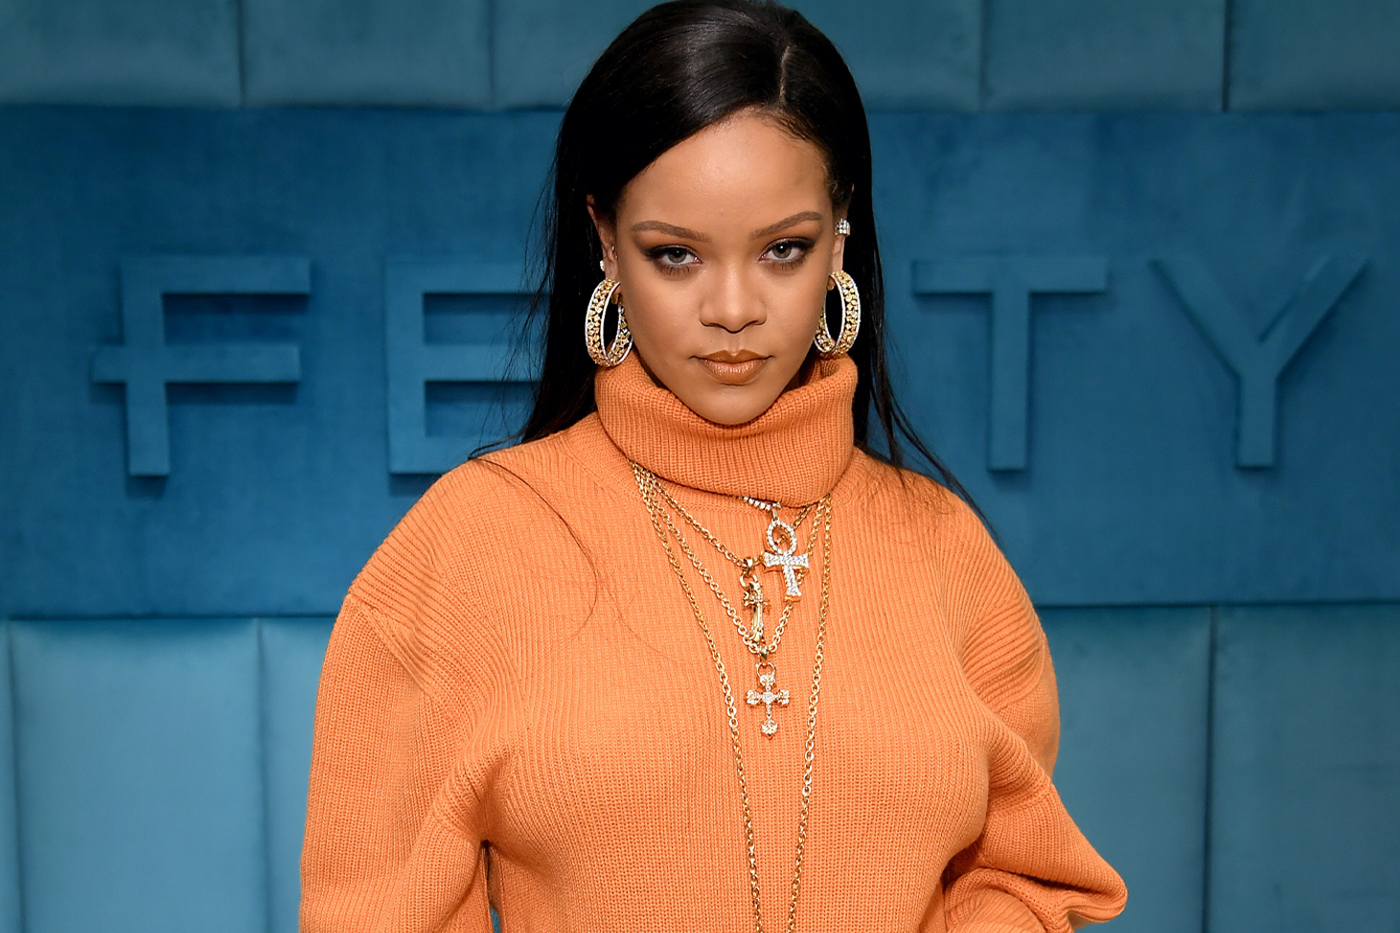 LVMH 正式宣布旗下 Rihanna 主理之时装品牌 Fenty 停止营运